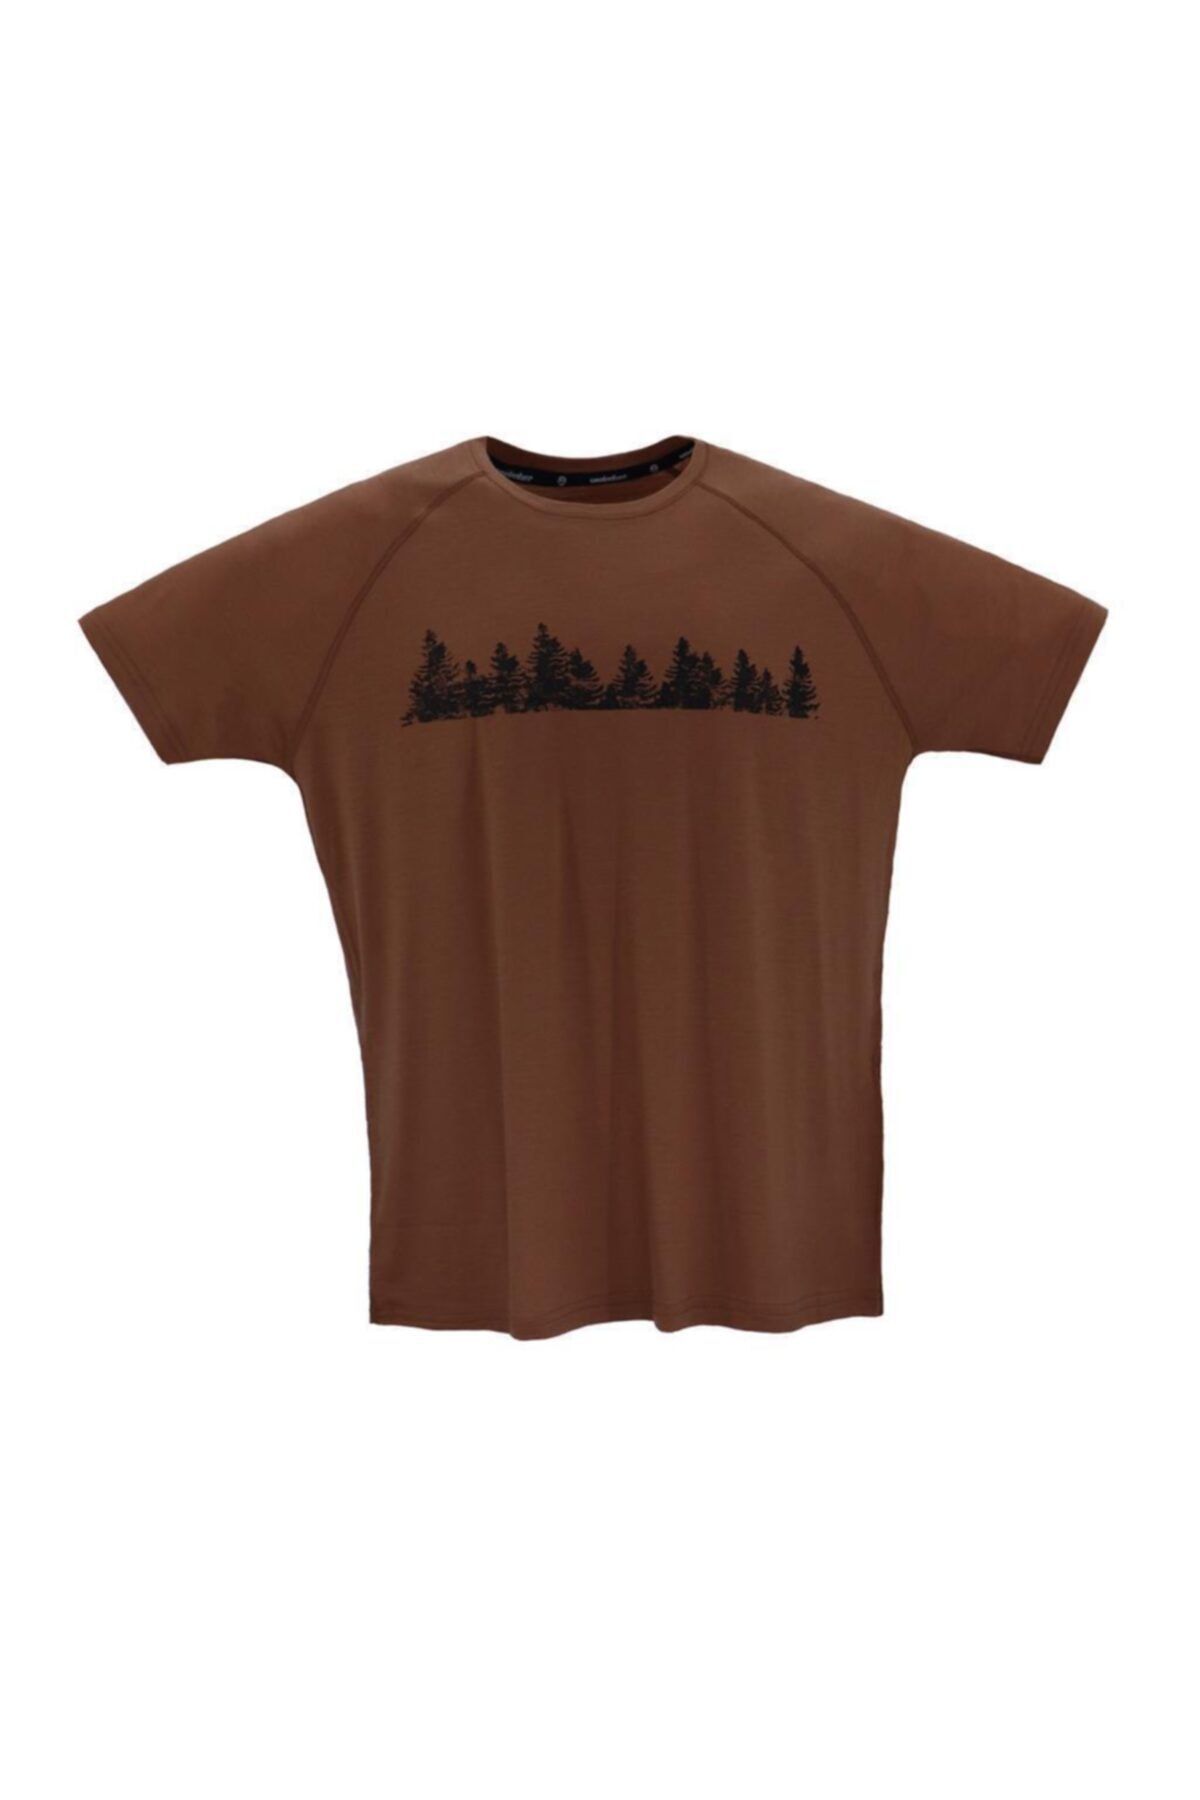 Woolnat Merino Yün Ağaç Baskılı Kısa Kol Erkek Tshirt